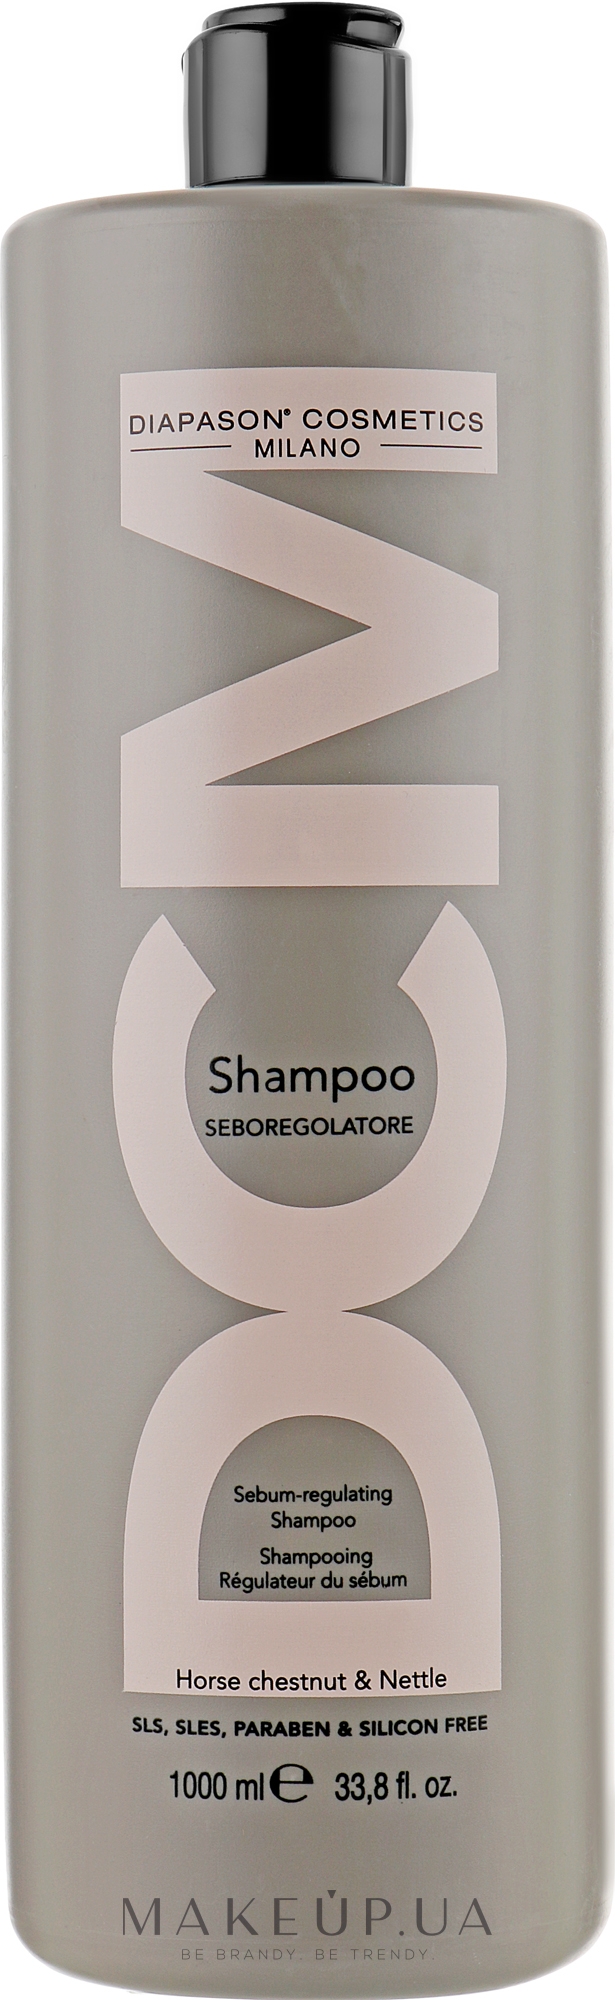 Шампунь для жирных волос - DCM Sebum-regulating Shampoo — фото 1000ml